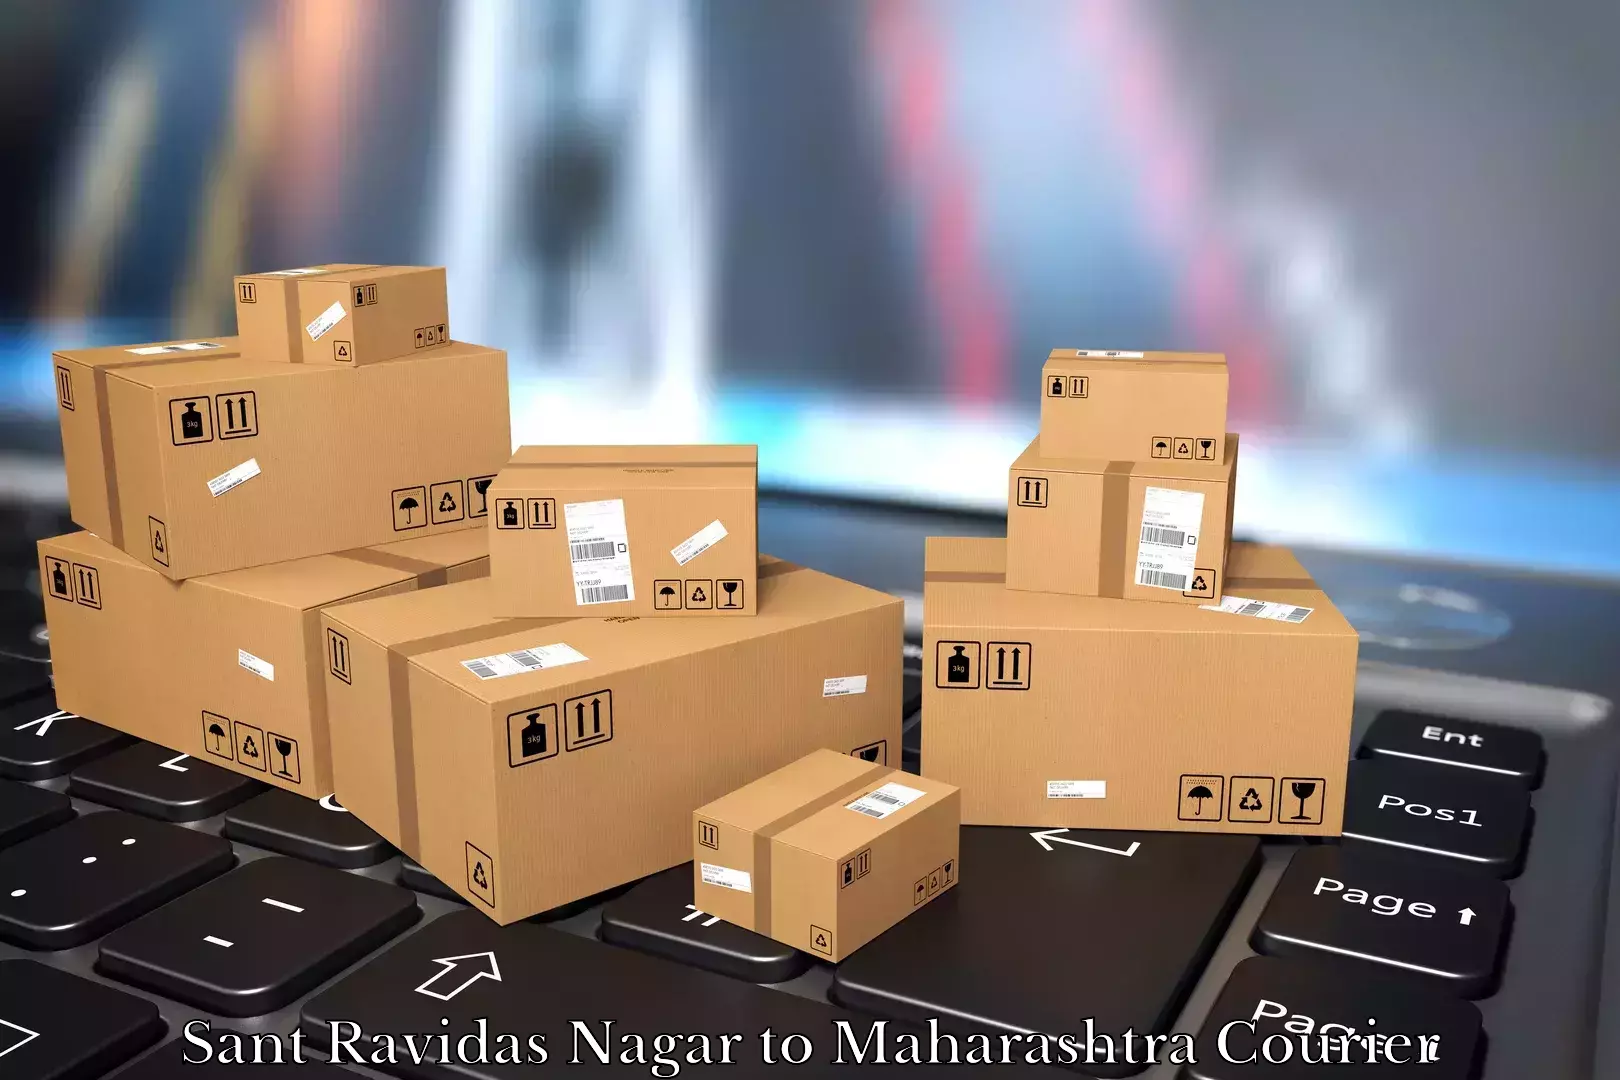 Moving and storage services Sant Ravidas Nagar to Ramtek